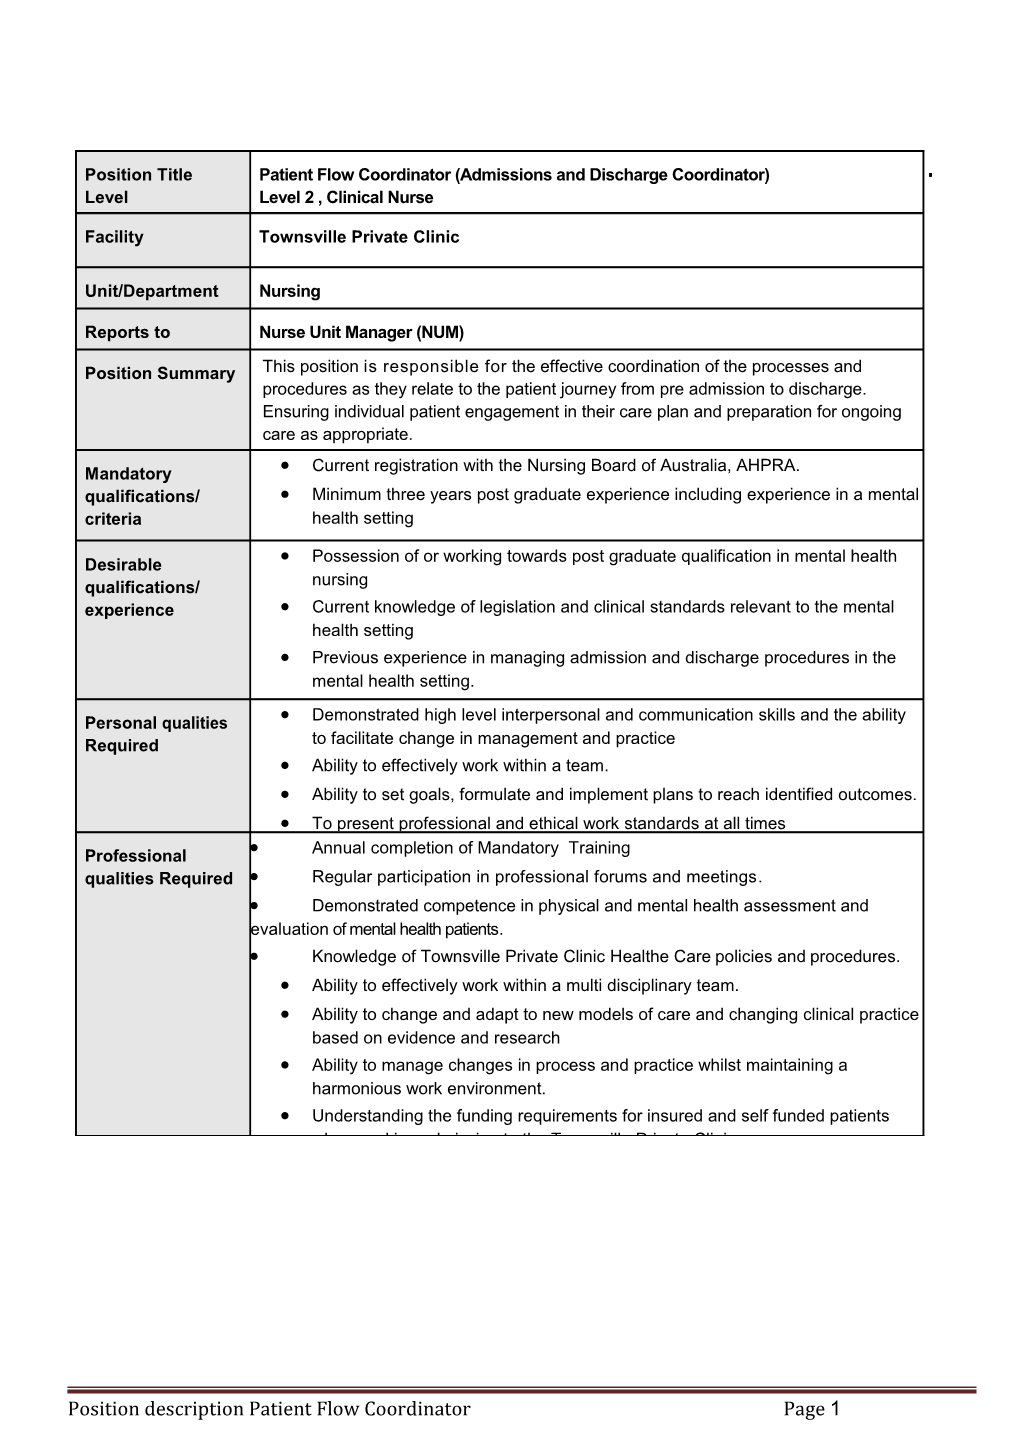 Position Description Patient Flow Coordinatorpage 3